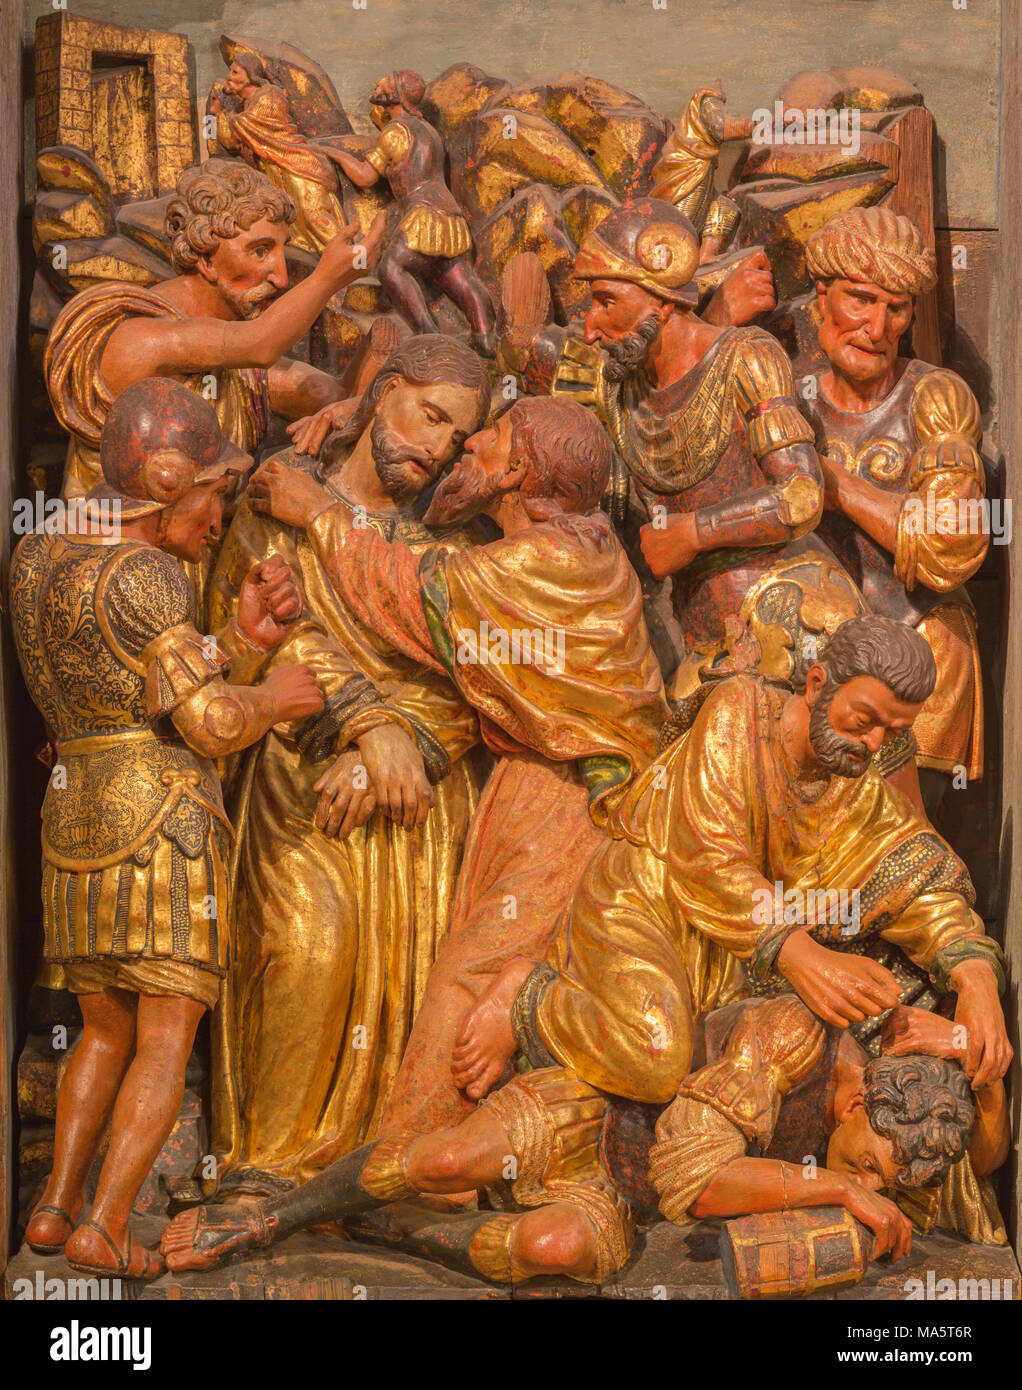 Saragosse, Espagne - 3 mars 2018 : La renaissance sculpté polychome Batray de secours de Jésus à Gethsémané jardin à l'église Iglesia de San Miguel de l Banque D'Images